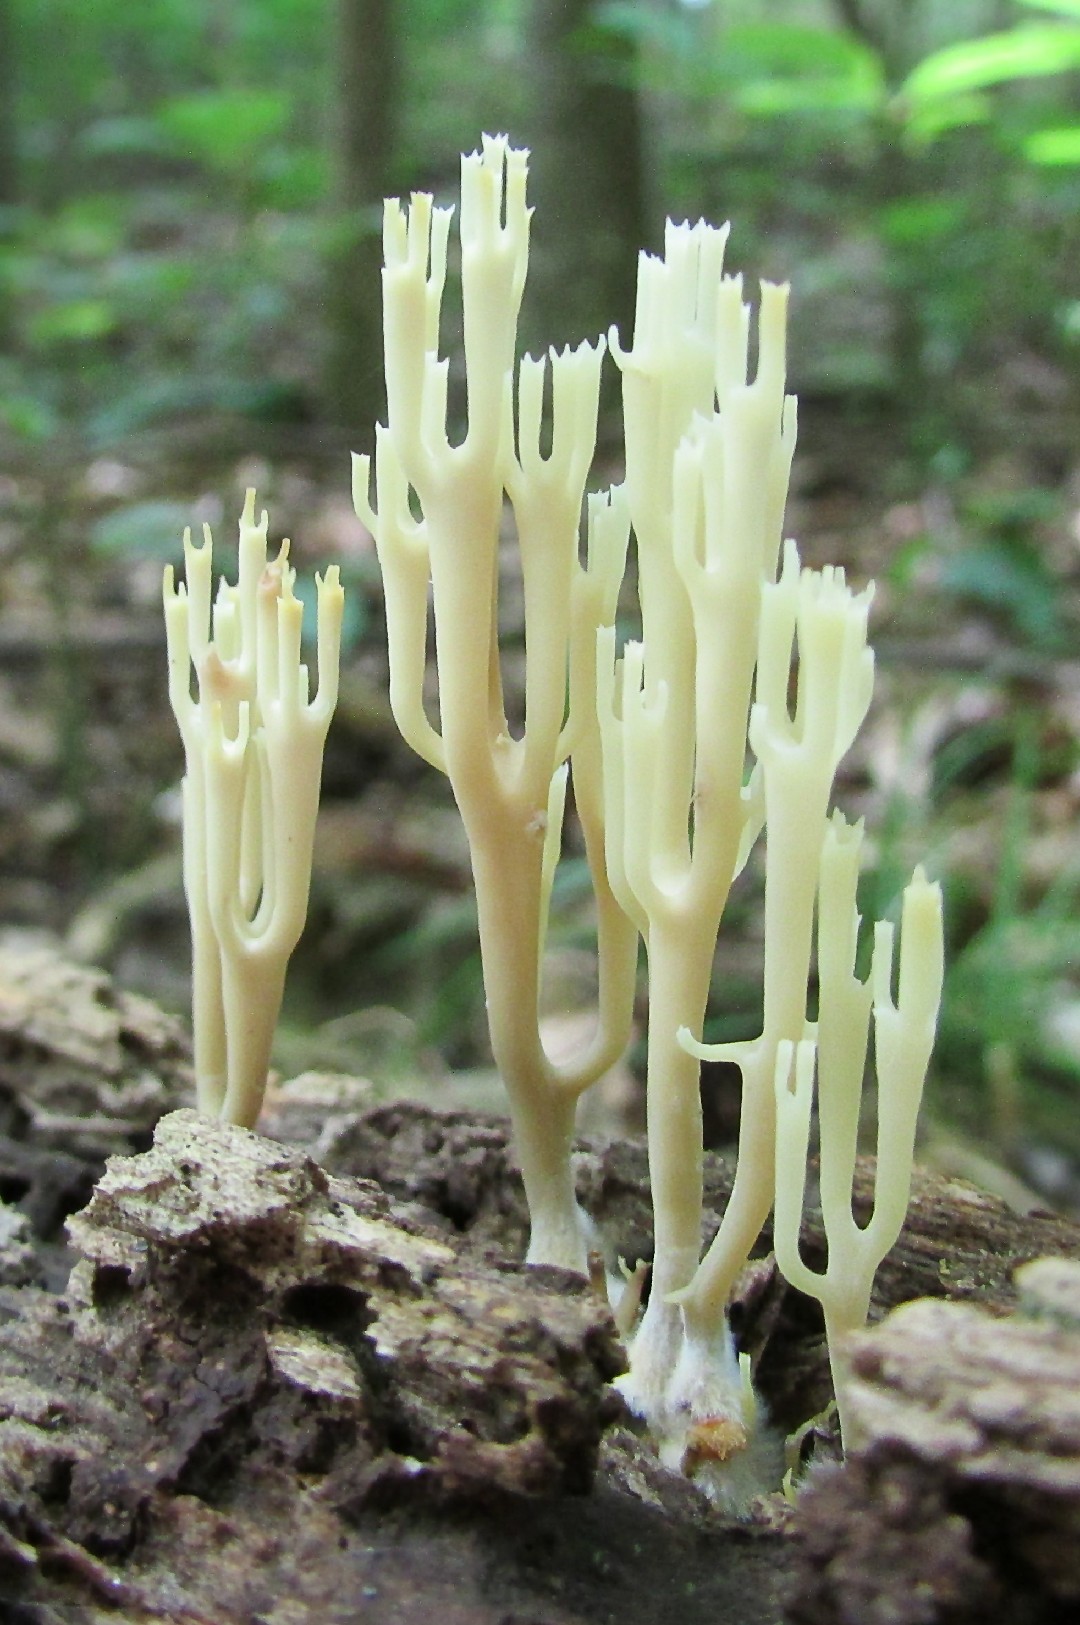 杯密瑚菌 (Artomyces pyxidatus)